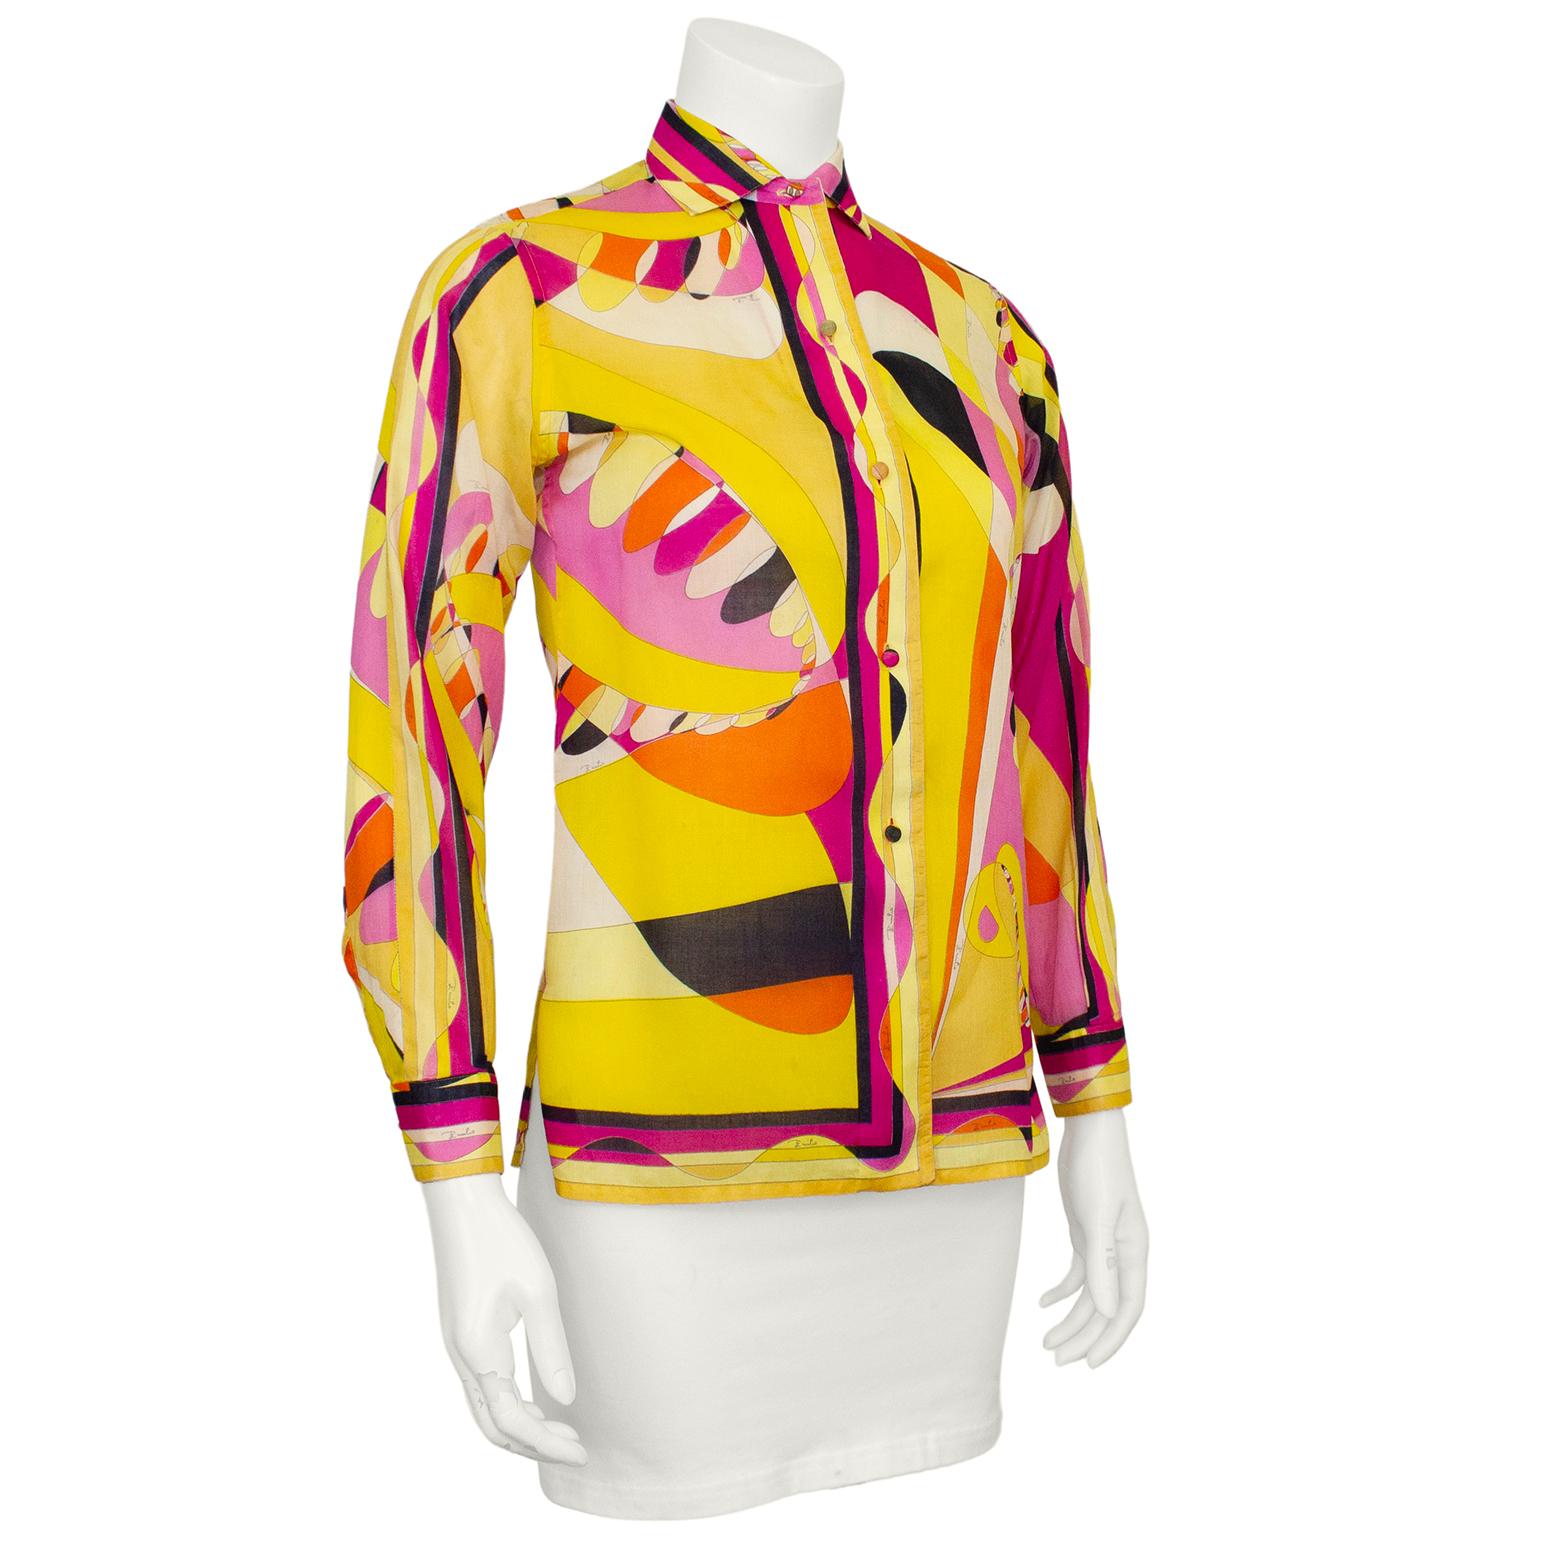 Fabelhaftes bedrucktes Hemd aus Baumwolle von Emilio Pucci aus den 1960er Jahren. Das exklusiv für Saks Fifth Avenue hergestellte Hemd ist in den Farben Schwarz, Rosa, Orange und Gelb gehalten. In ausgezeichnetem Zustand mit verdeckten Knöpfen auf